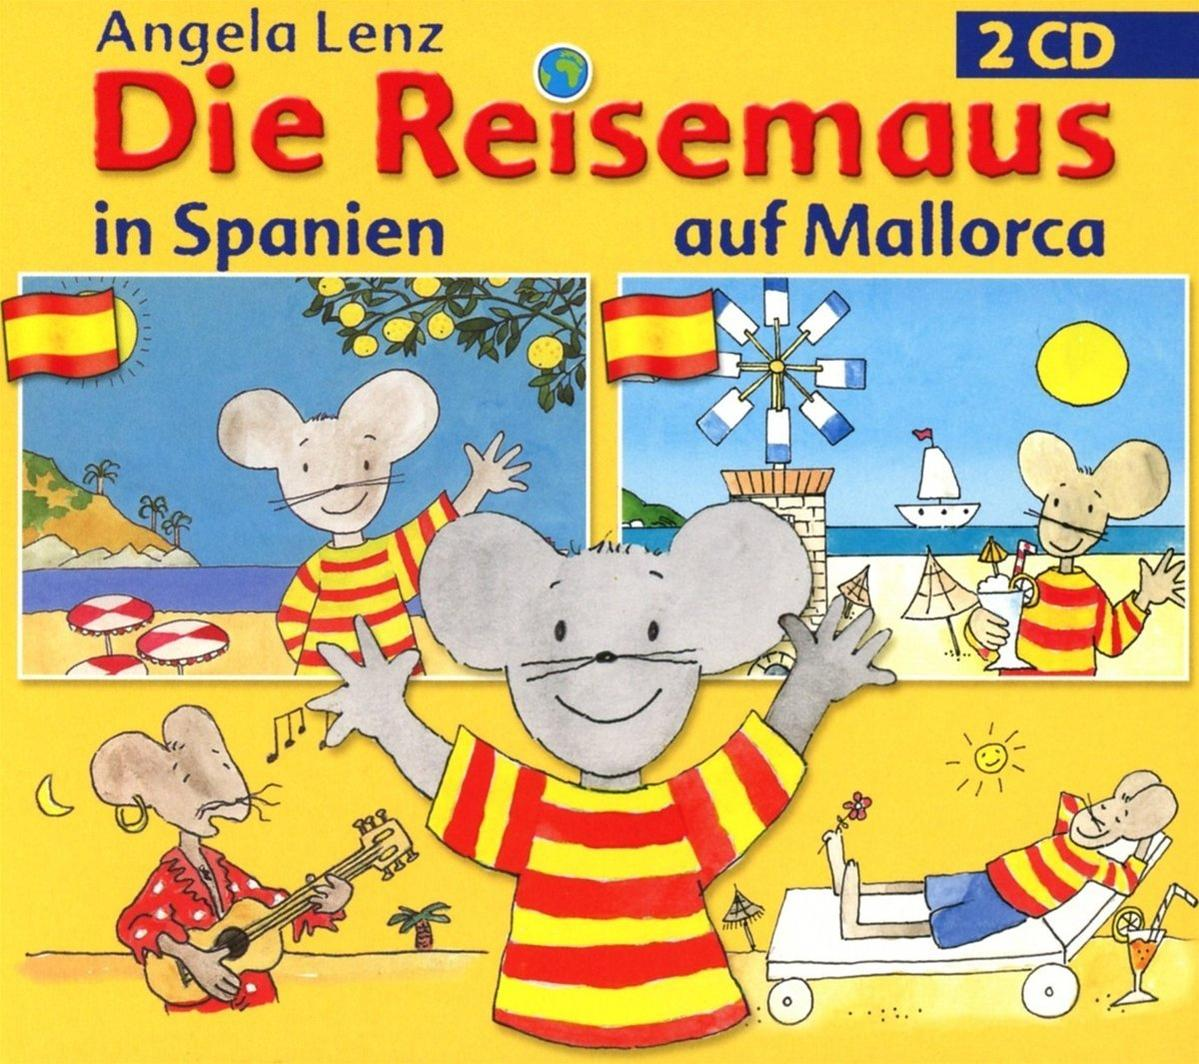 Angela Lenz und - - Reisemaus in Spanien (CD) Die Mallorca auf